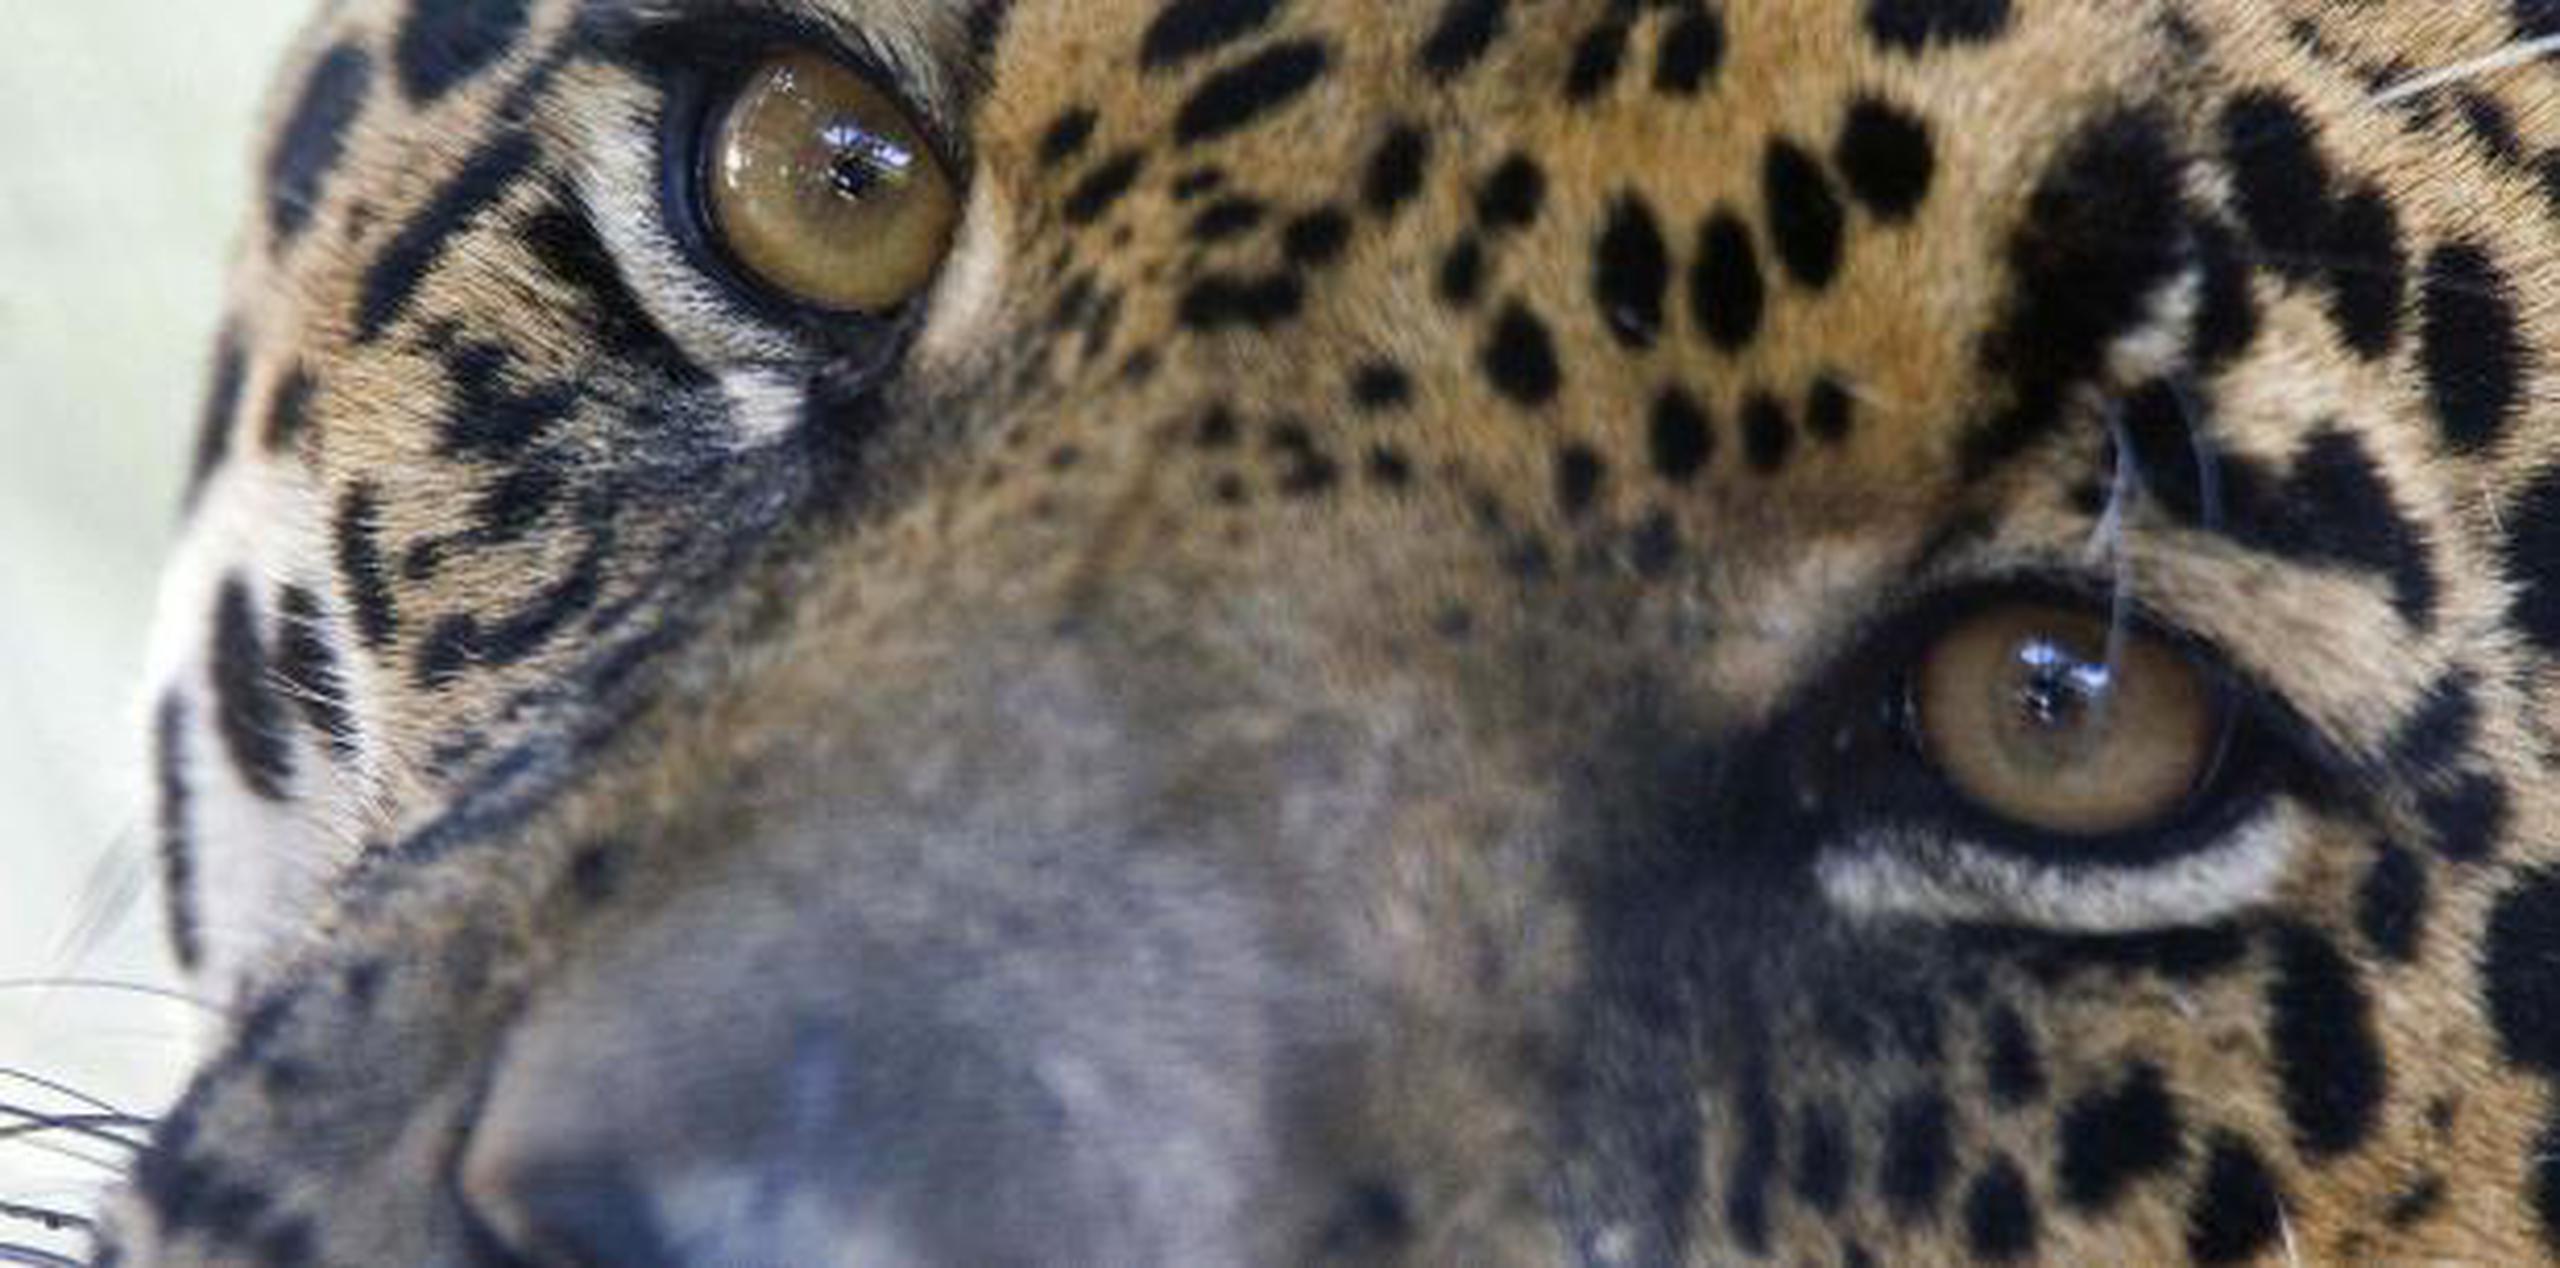 Asimismo, el zoológico aseguró en sus redes que nada le pasará a su jaguar. (archivo)

